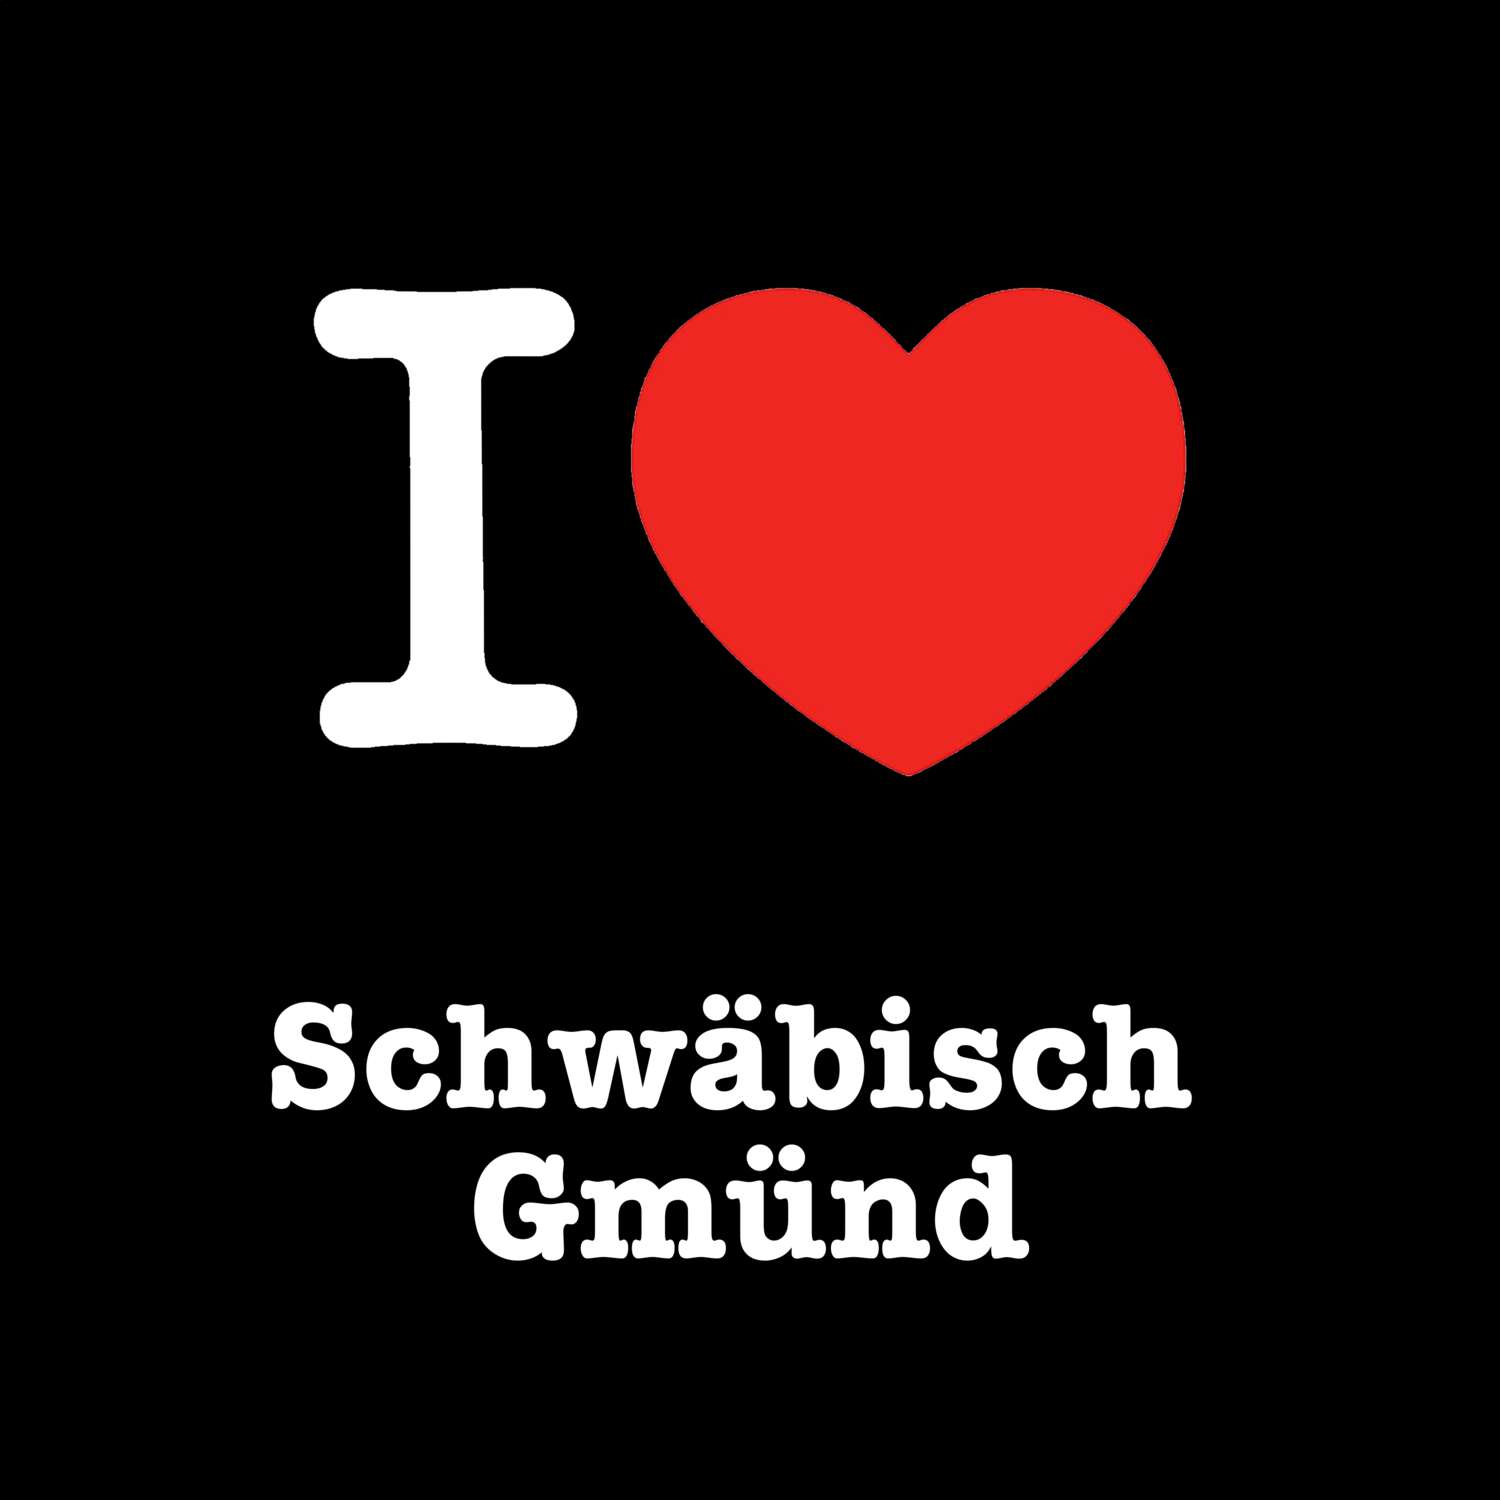 Schwäbisch Gmünd T-Shirt »I love«